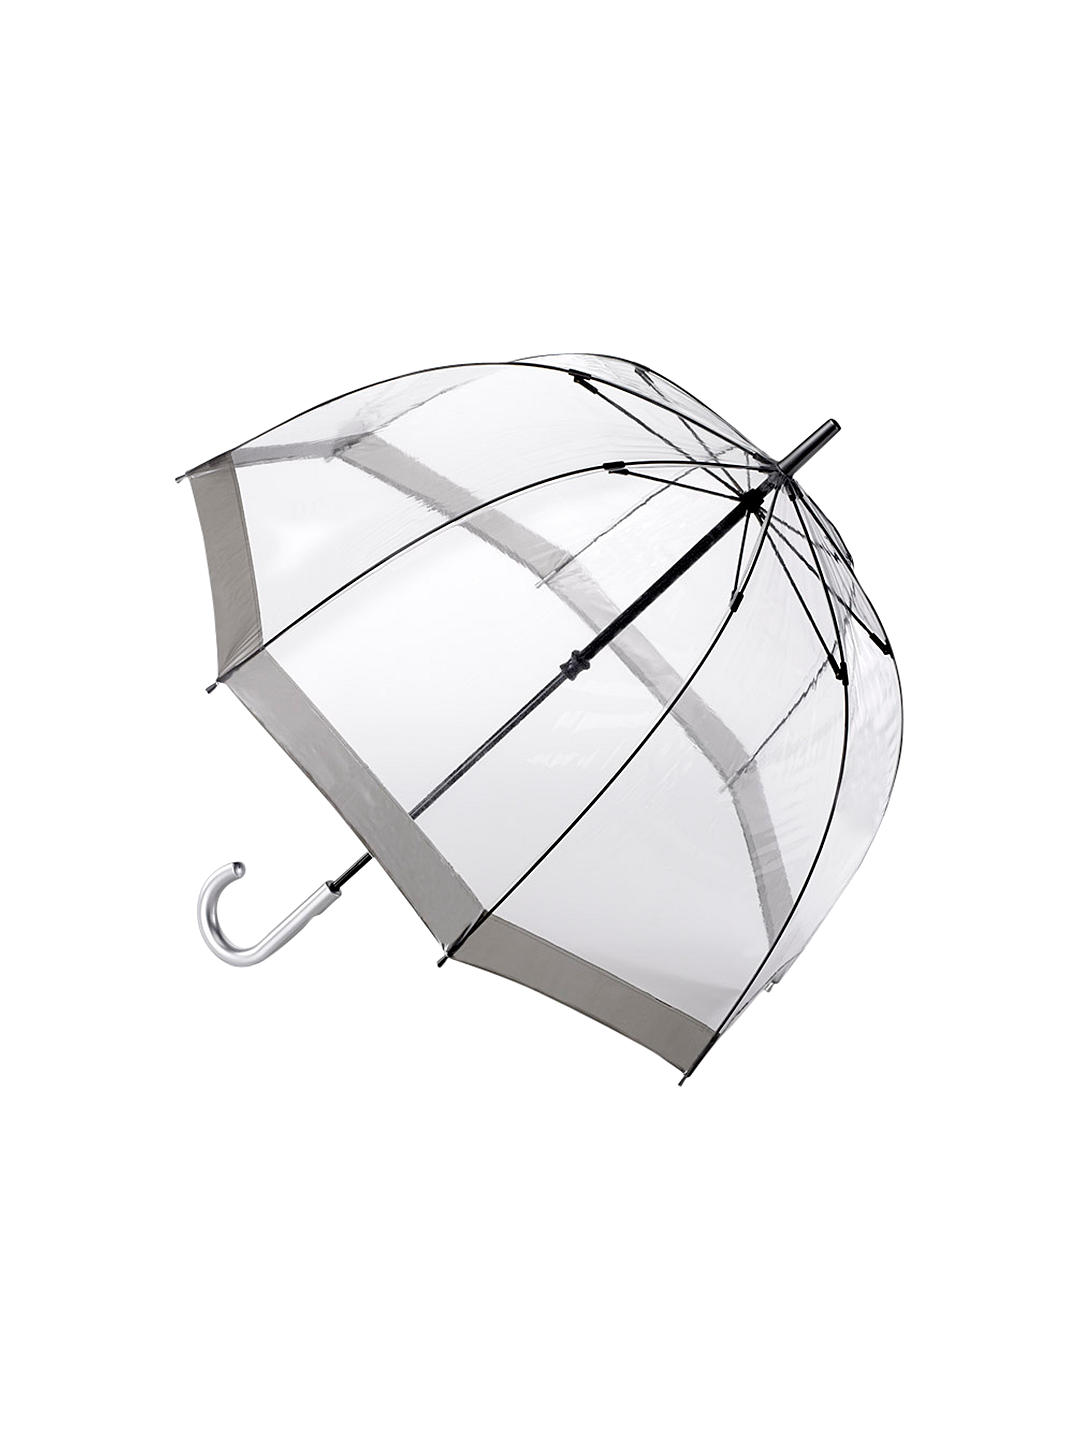 Fulton L041 Birdcage Domed Umbrella, Silver